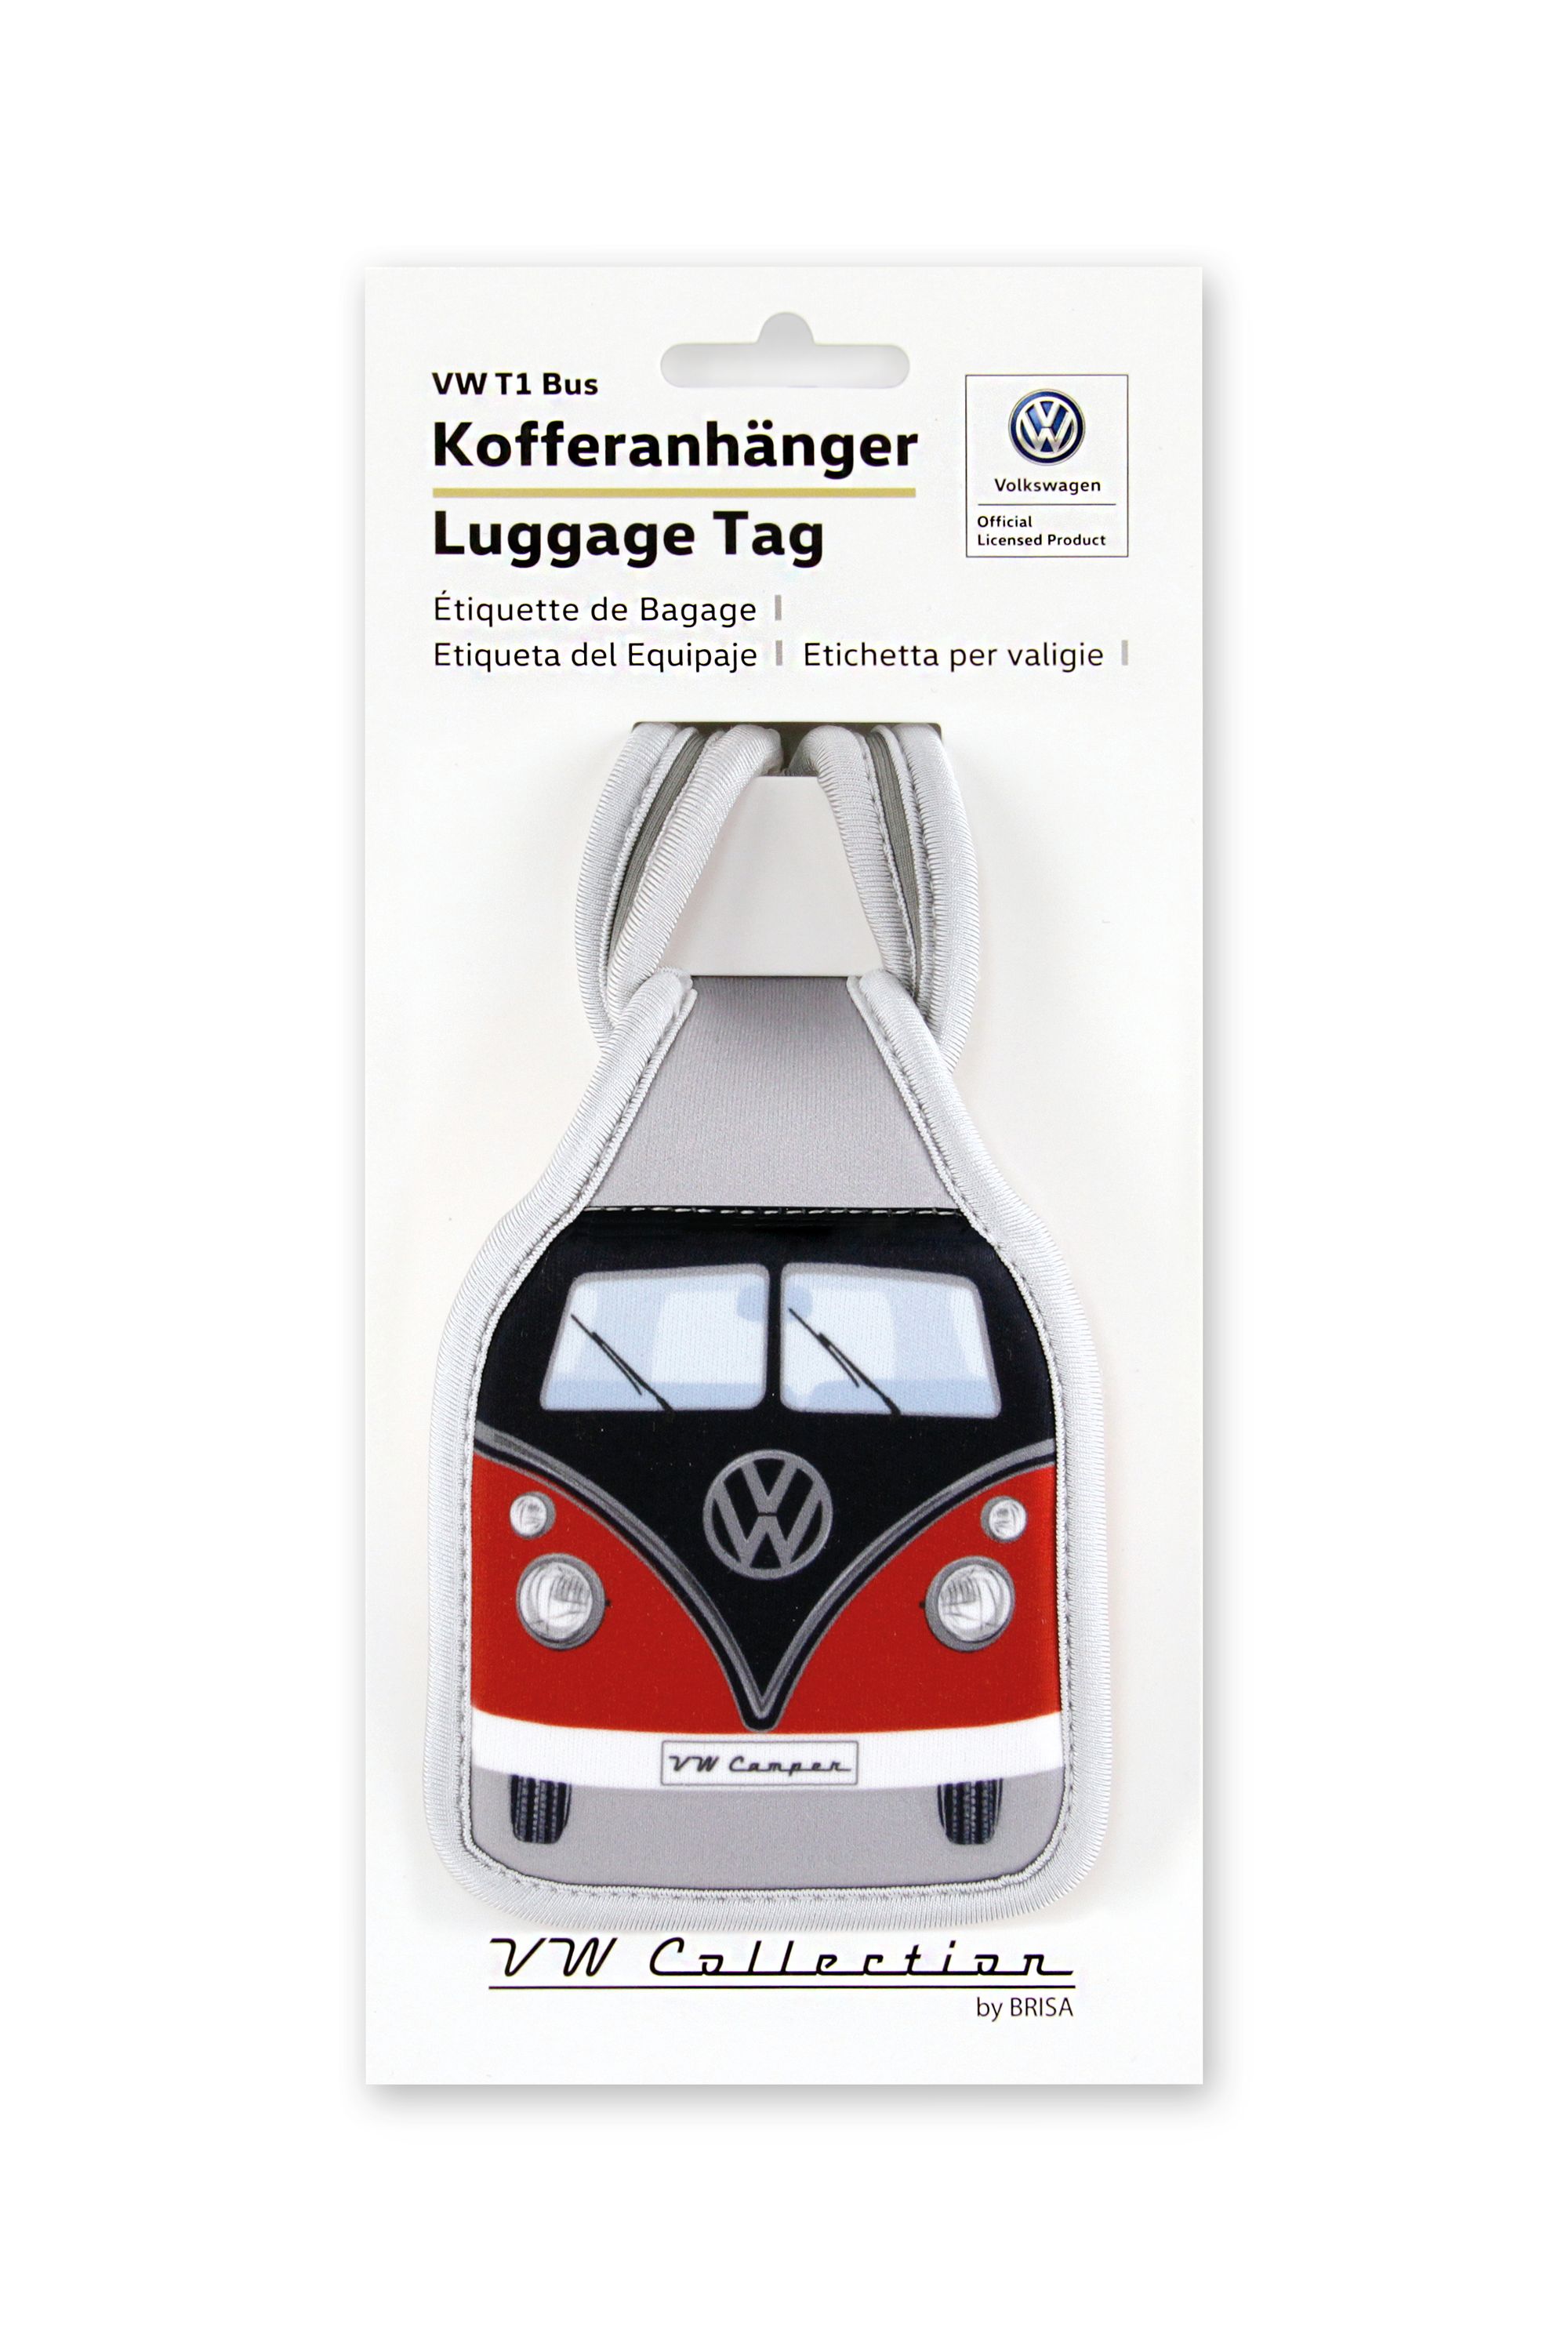 VW T1 Bus Kofferanhänger